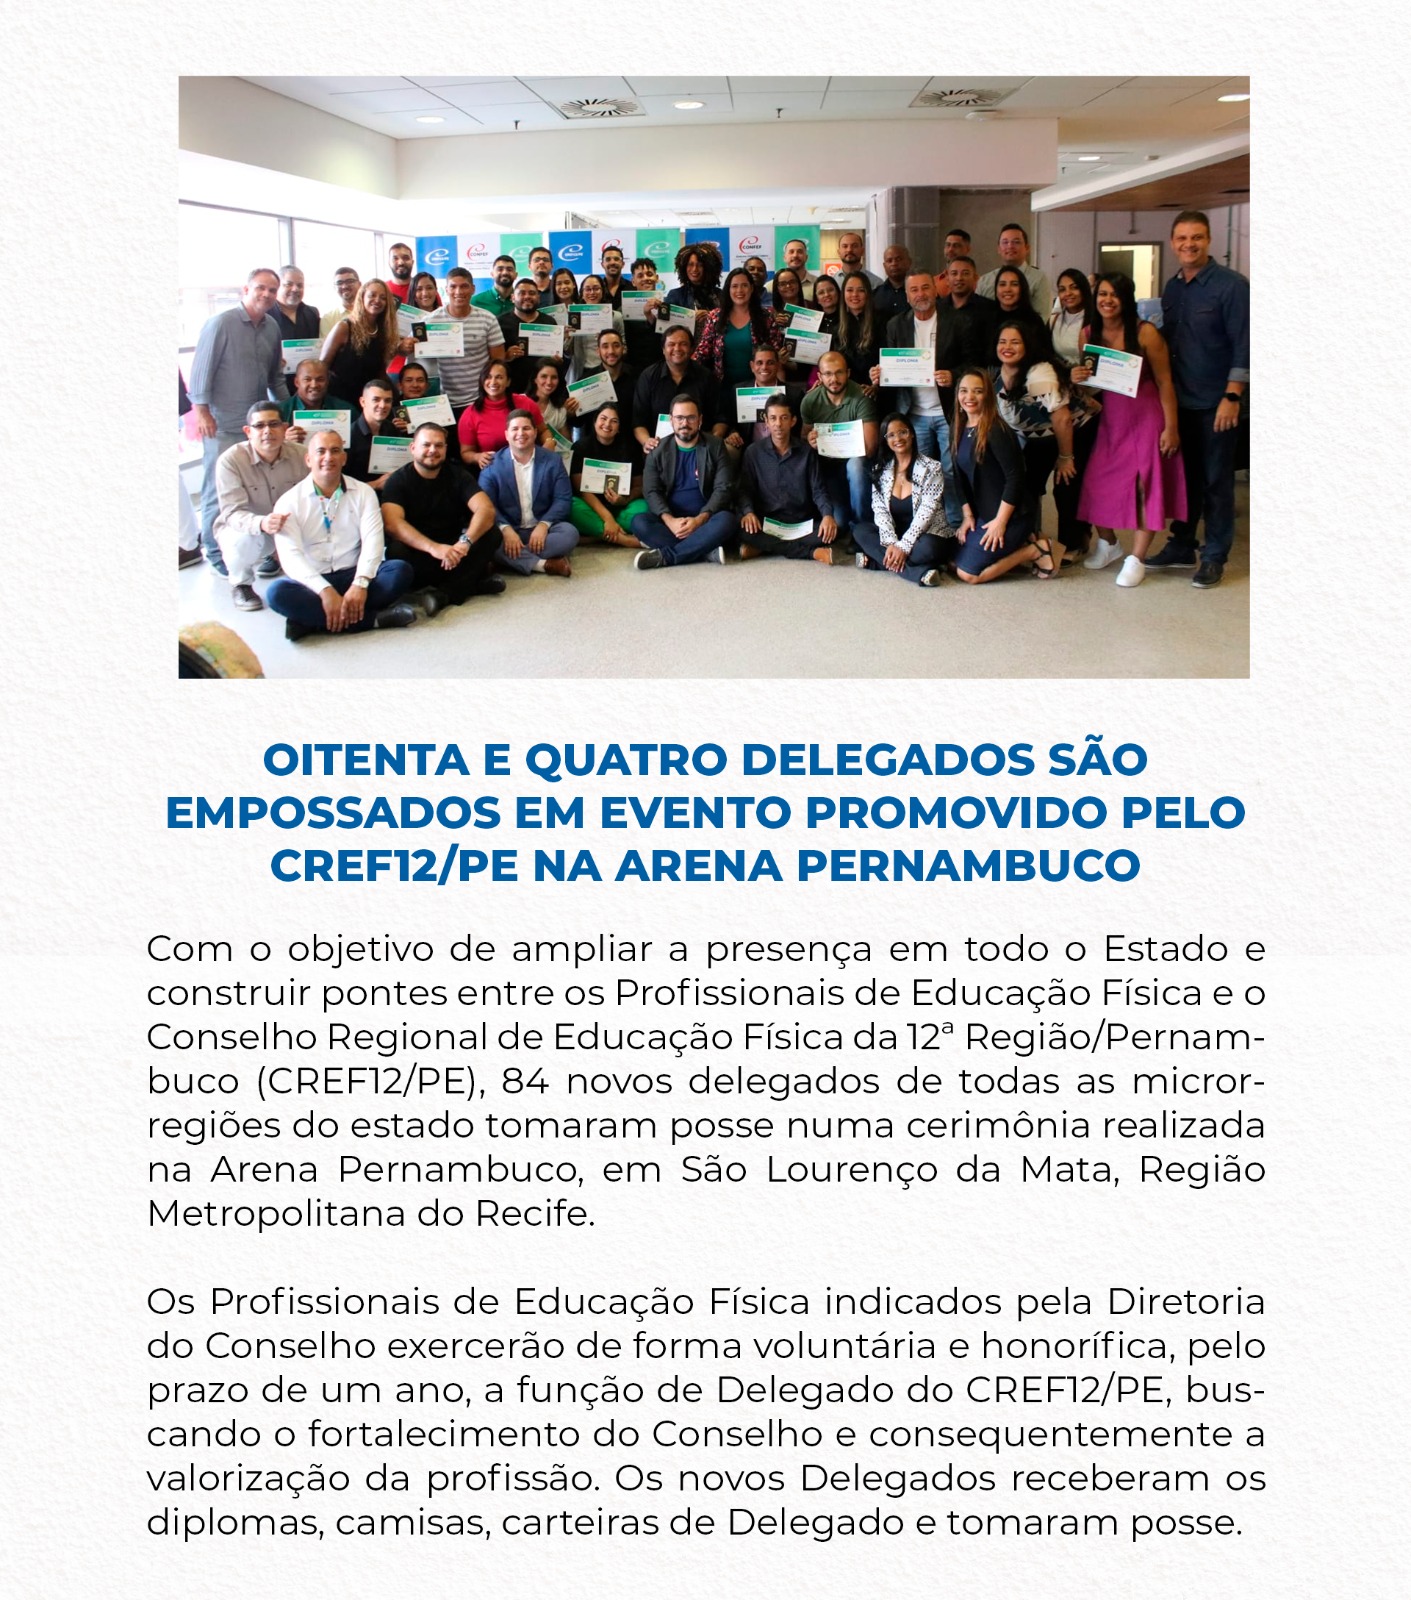 Oitenta e quatro delegados são empossados em evento promovido pelo CREF12/PE na Arena Pernambuco